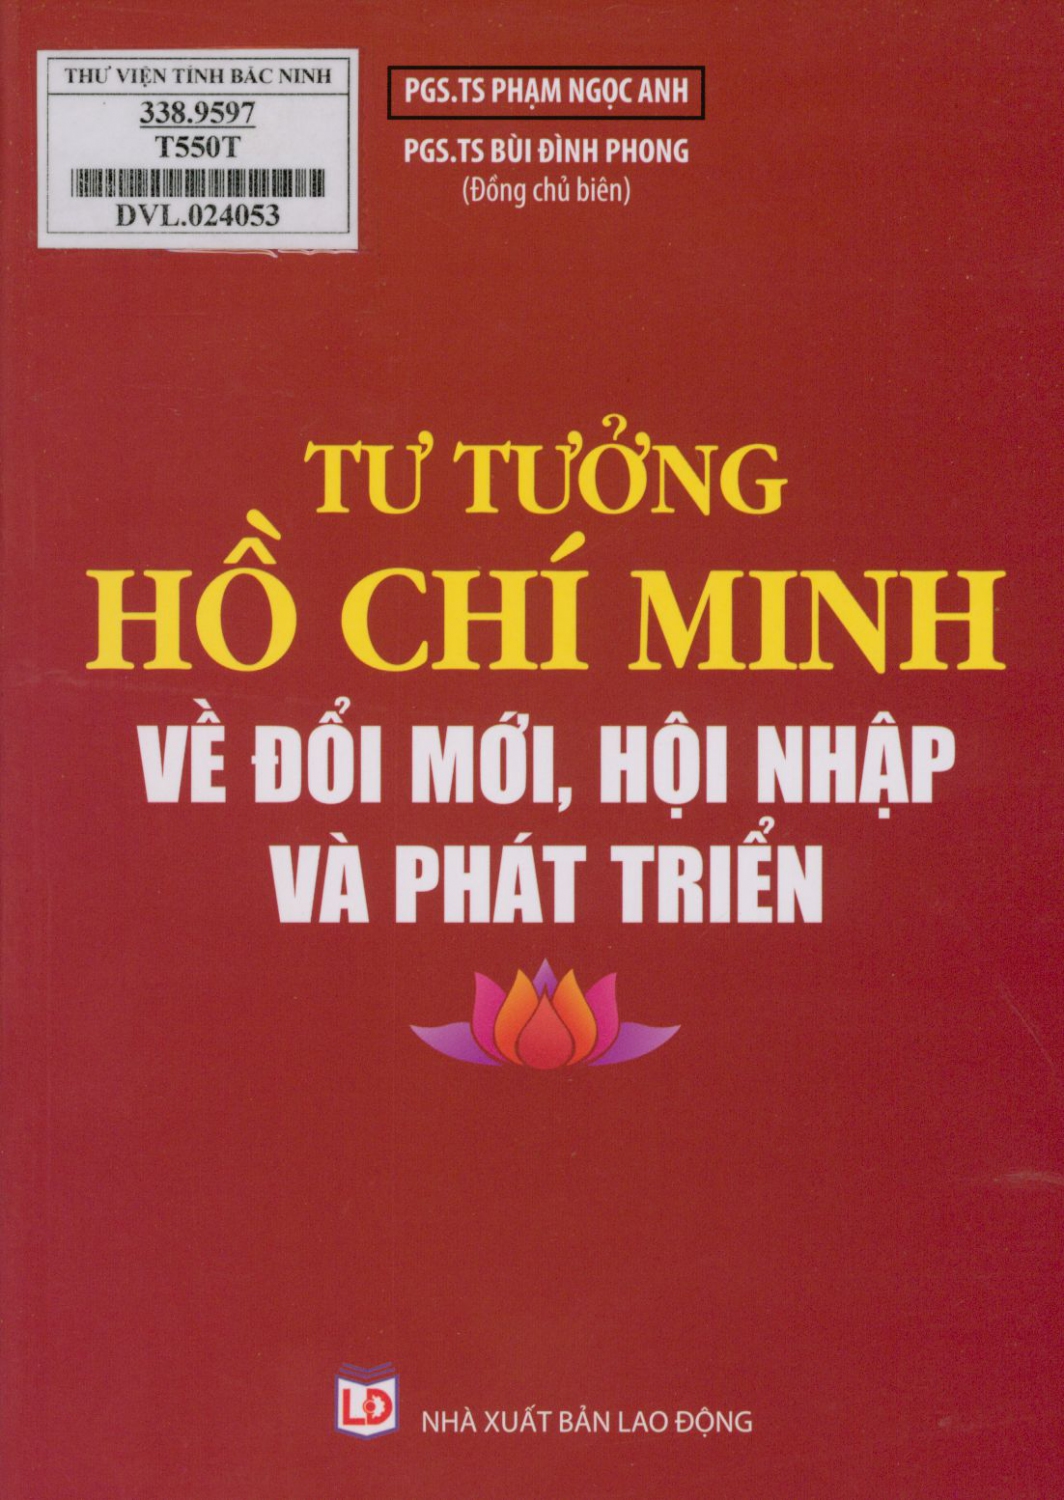 Tư tưởng Hồ Chí Minh về đổi mới, hội nhập và phát triển